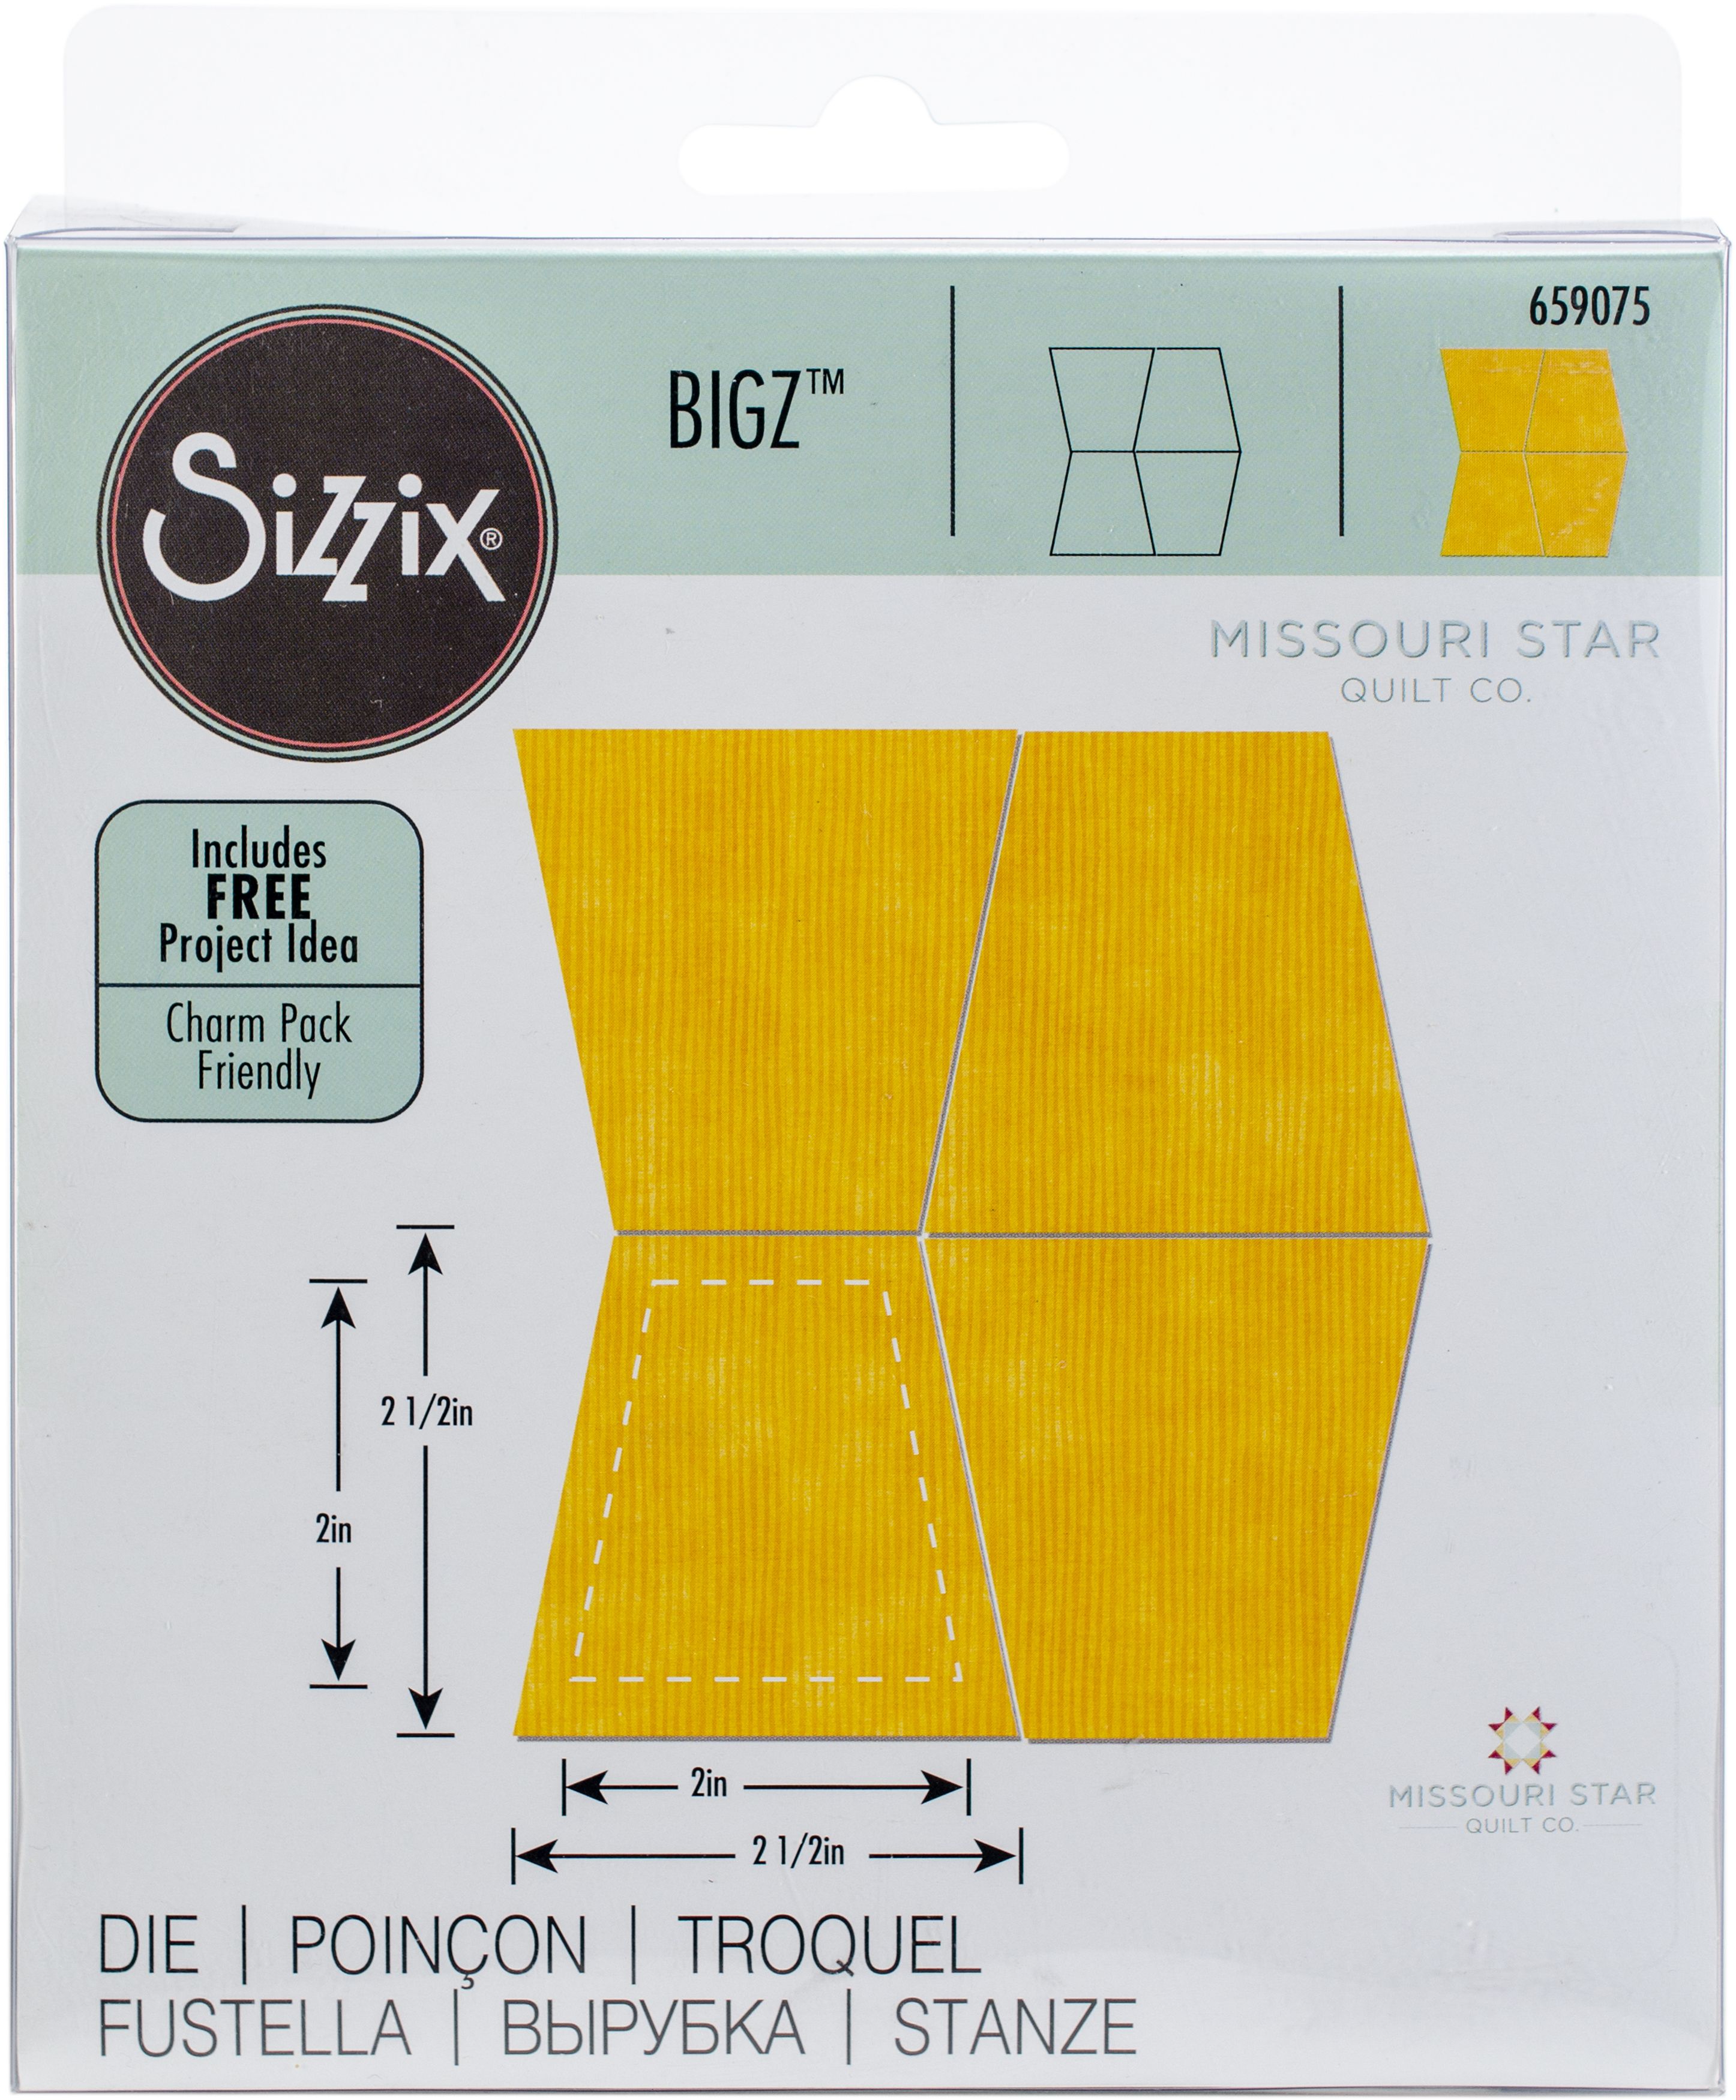 Sizzix Bigz Dies Fabi Edition-Tumbler Mini By Missouri Star Quilt Co. 